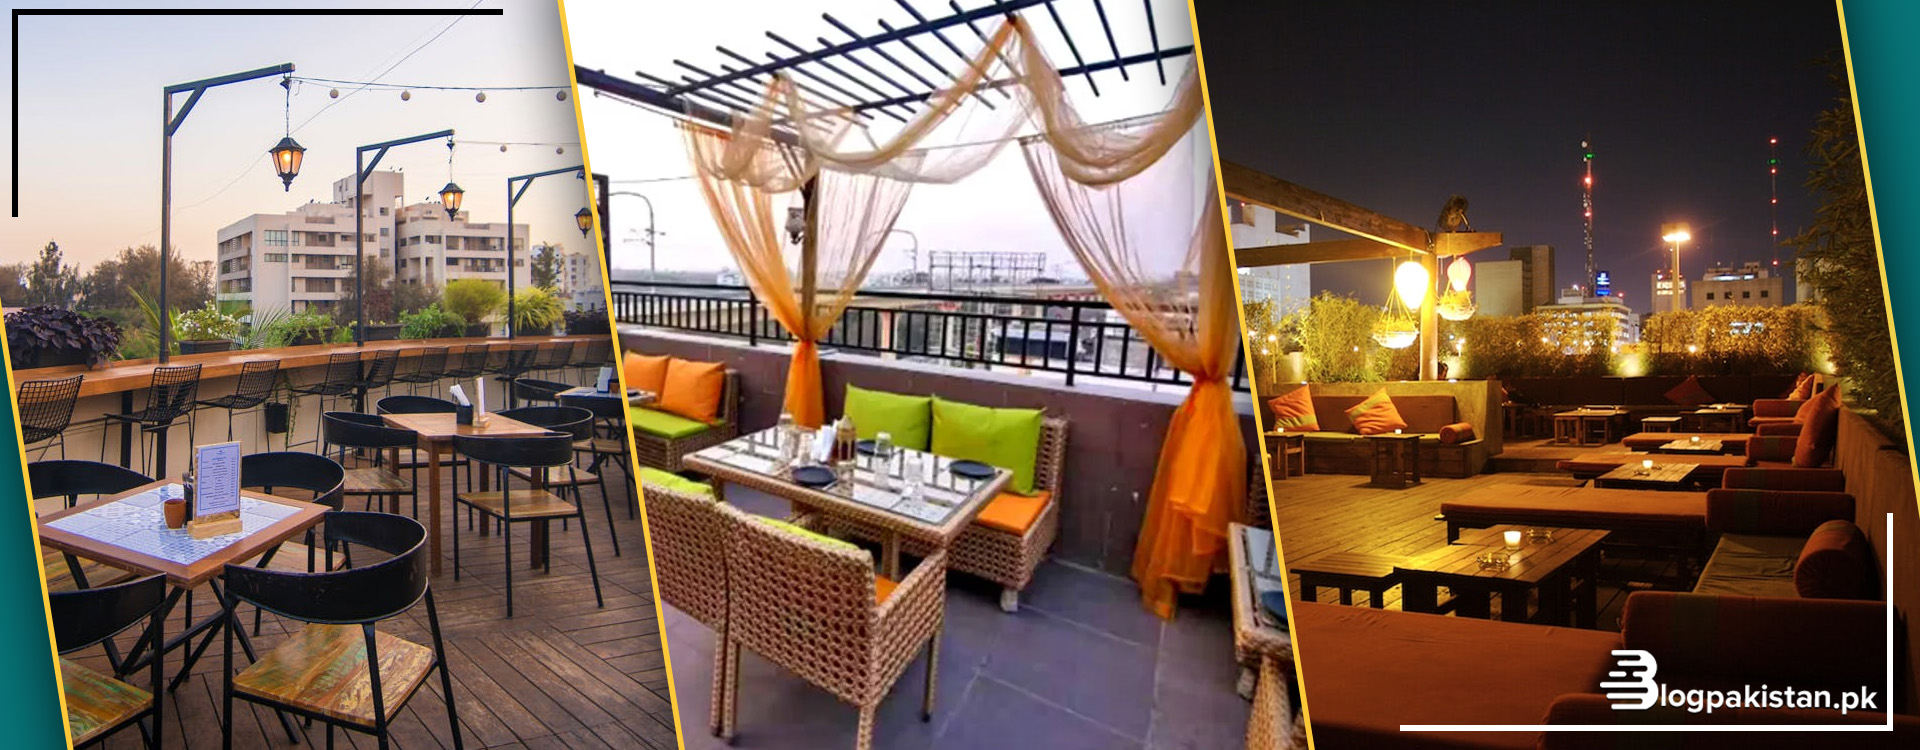 6 Rooftop Restaurants in Karachi - Menu & Contact Details